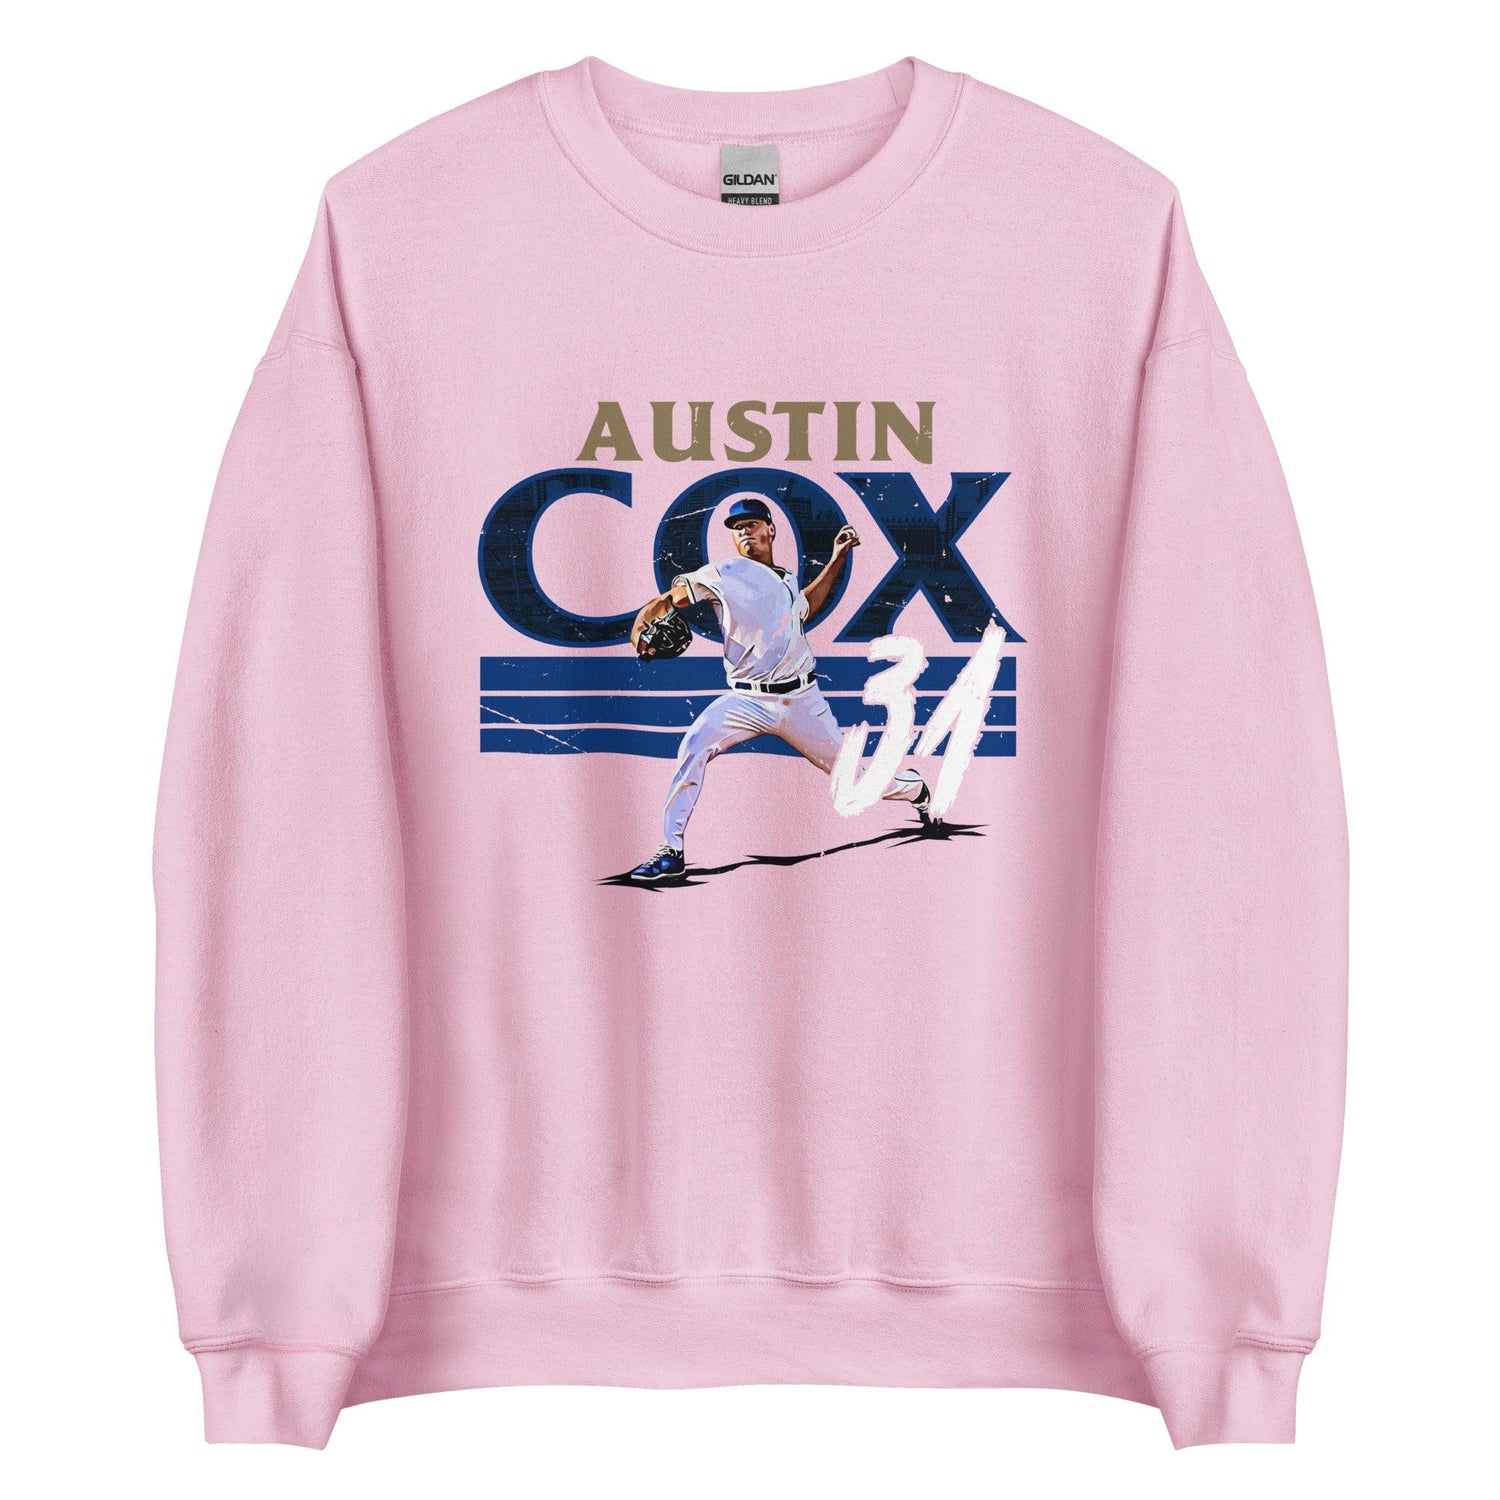 Austin Cox "Strike" Sweatshirt - Fan Arch